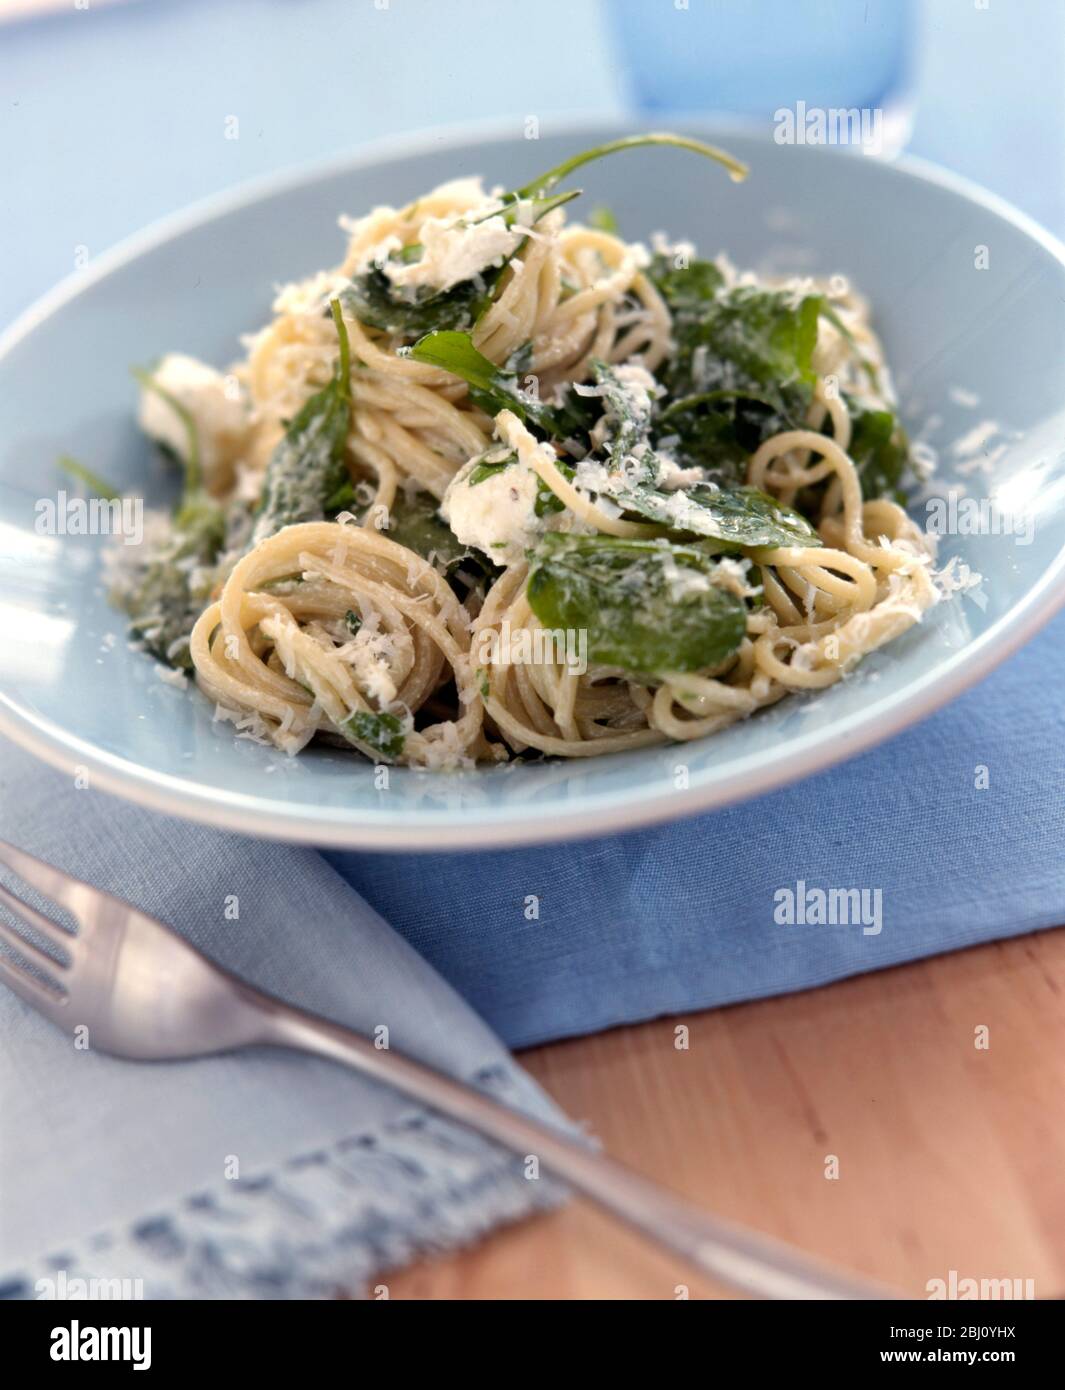 Eine blassblaue Keramikschale aus Spaghetti, garniert mit Basilikum und geriebenem Parmesan auf blauem Tuch - Stockfoto